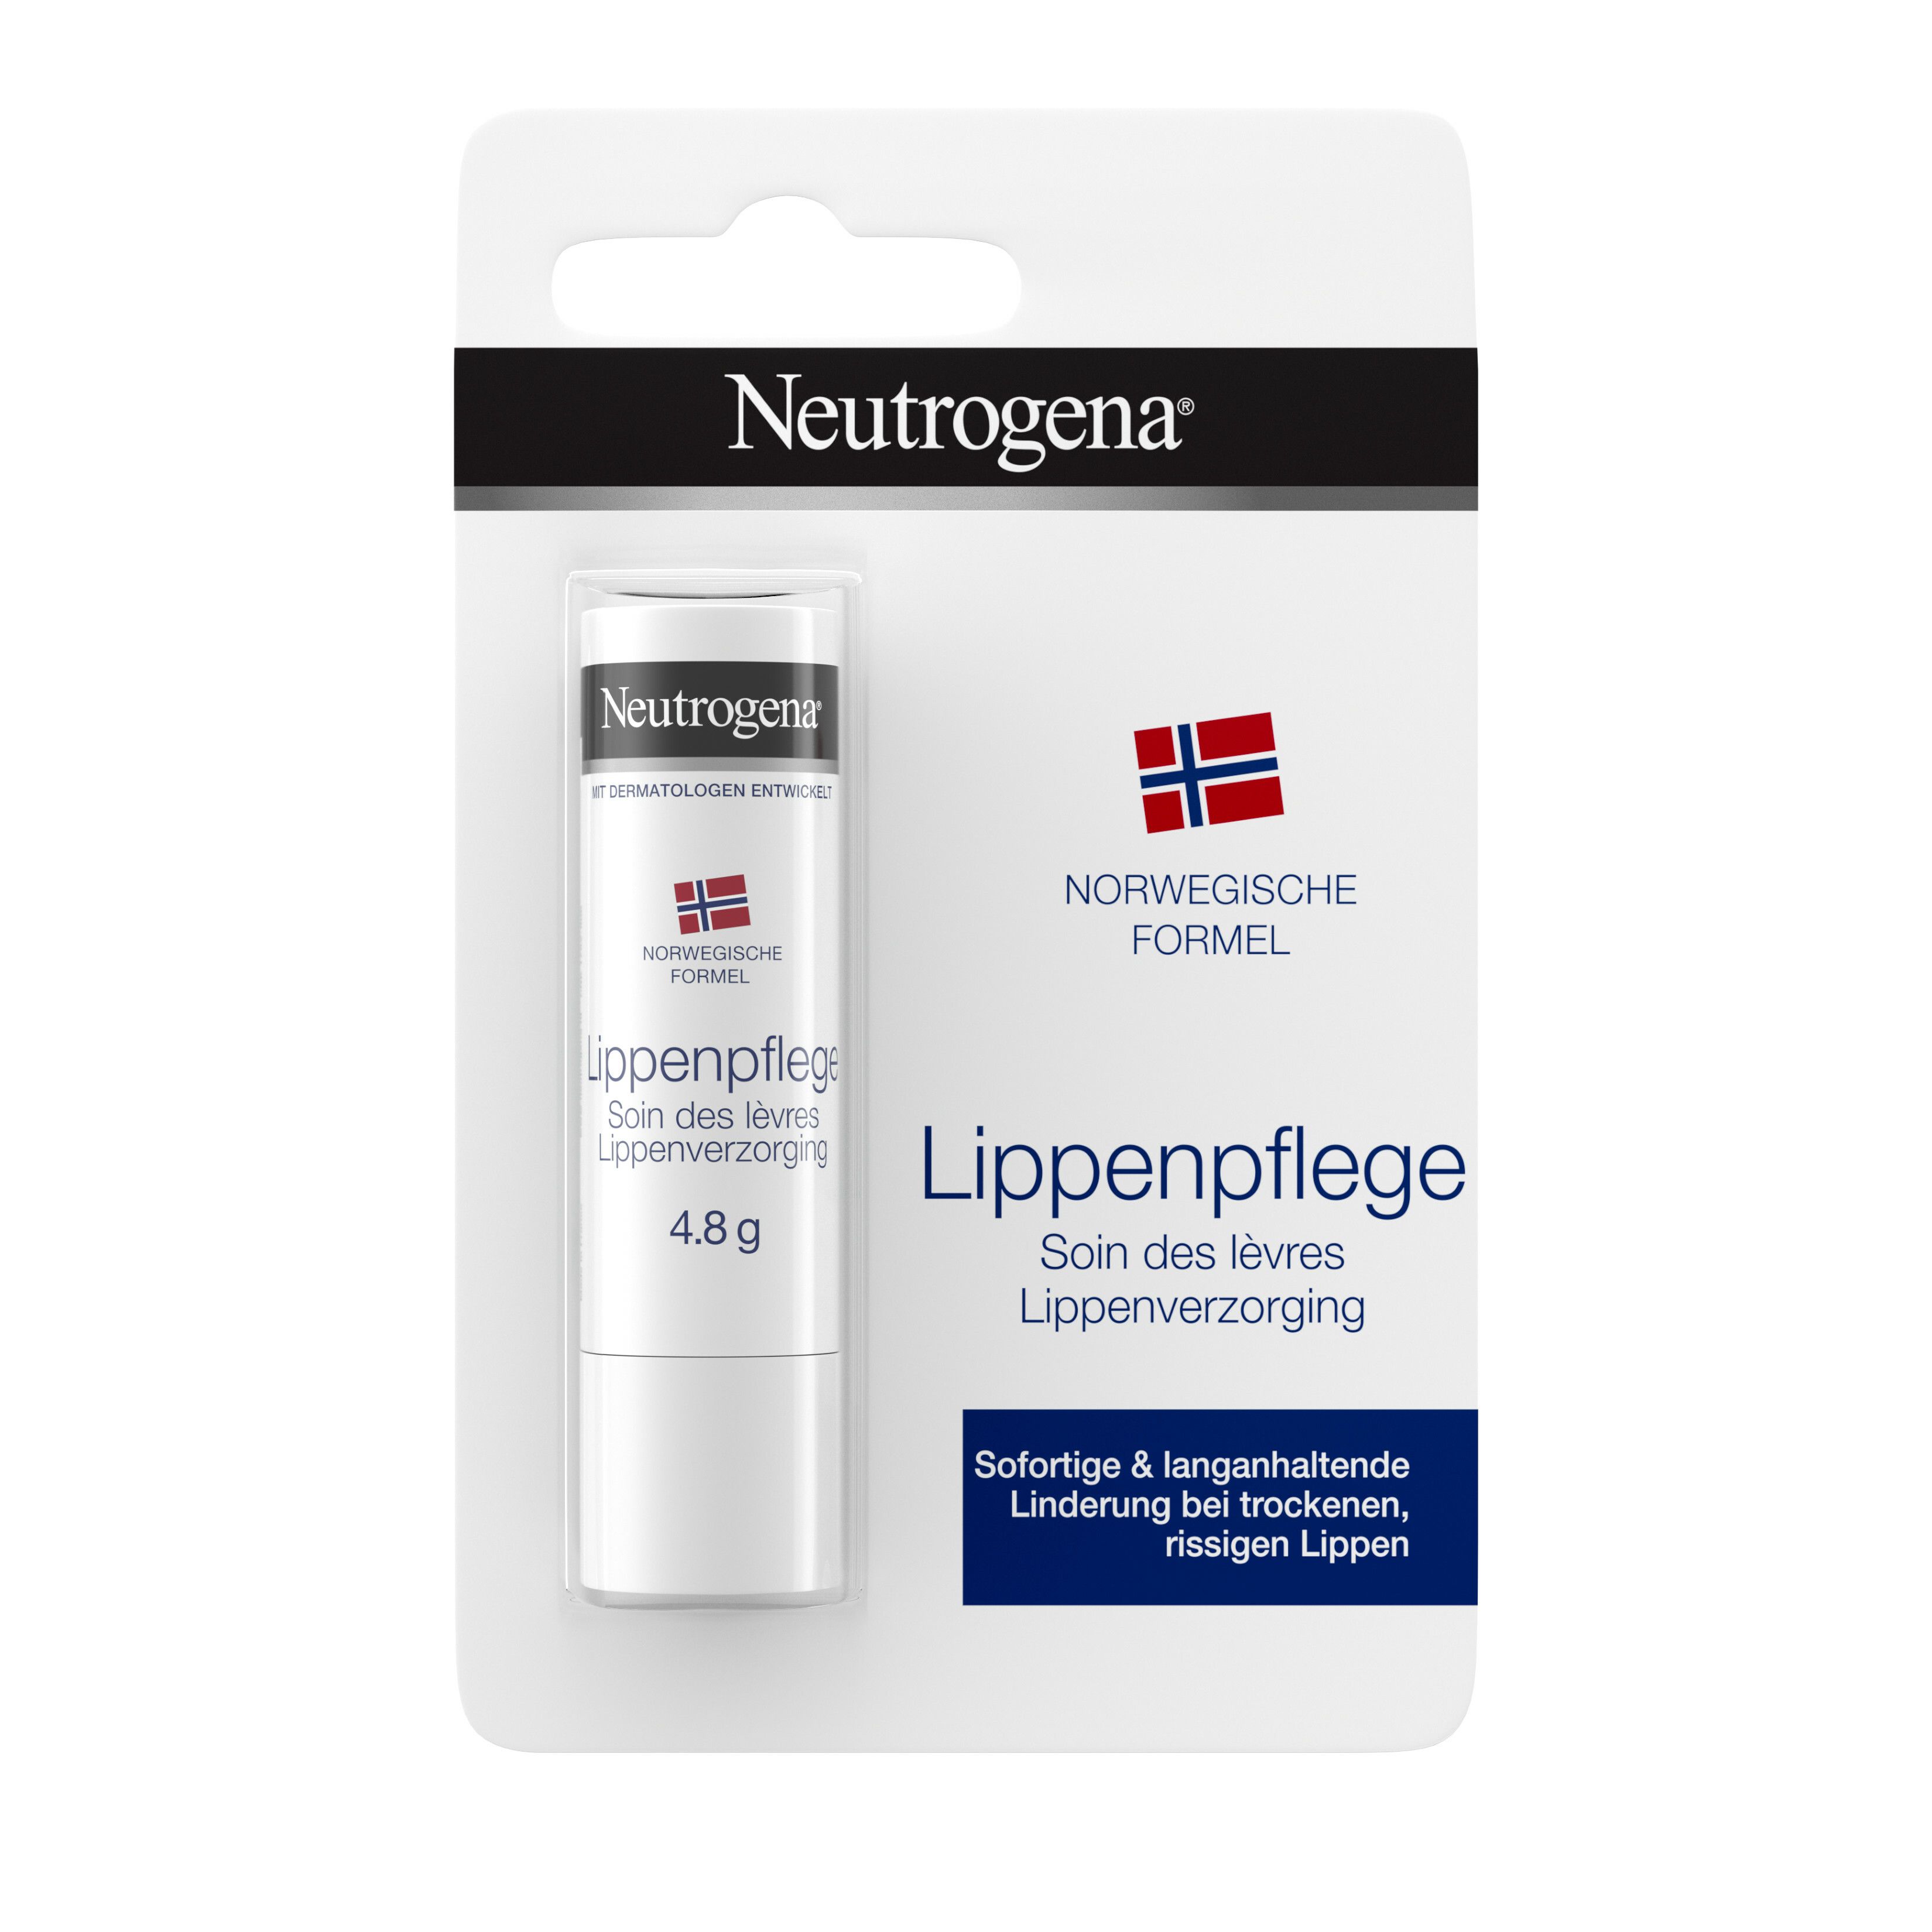 Neutrogena® Norwegische Formel Lippenpflege